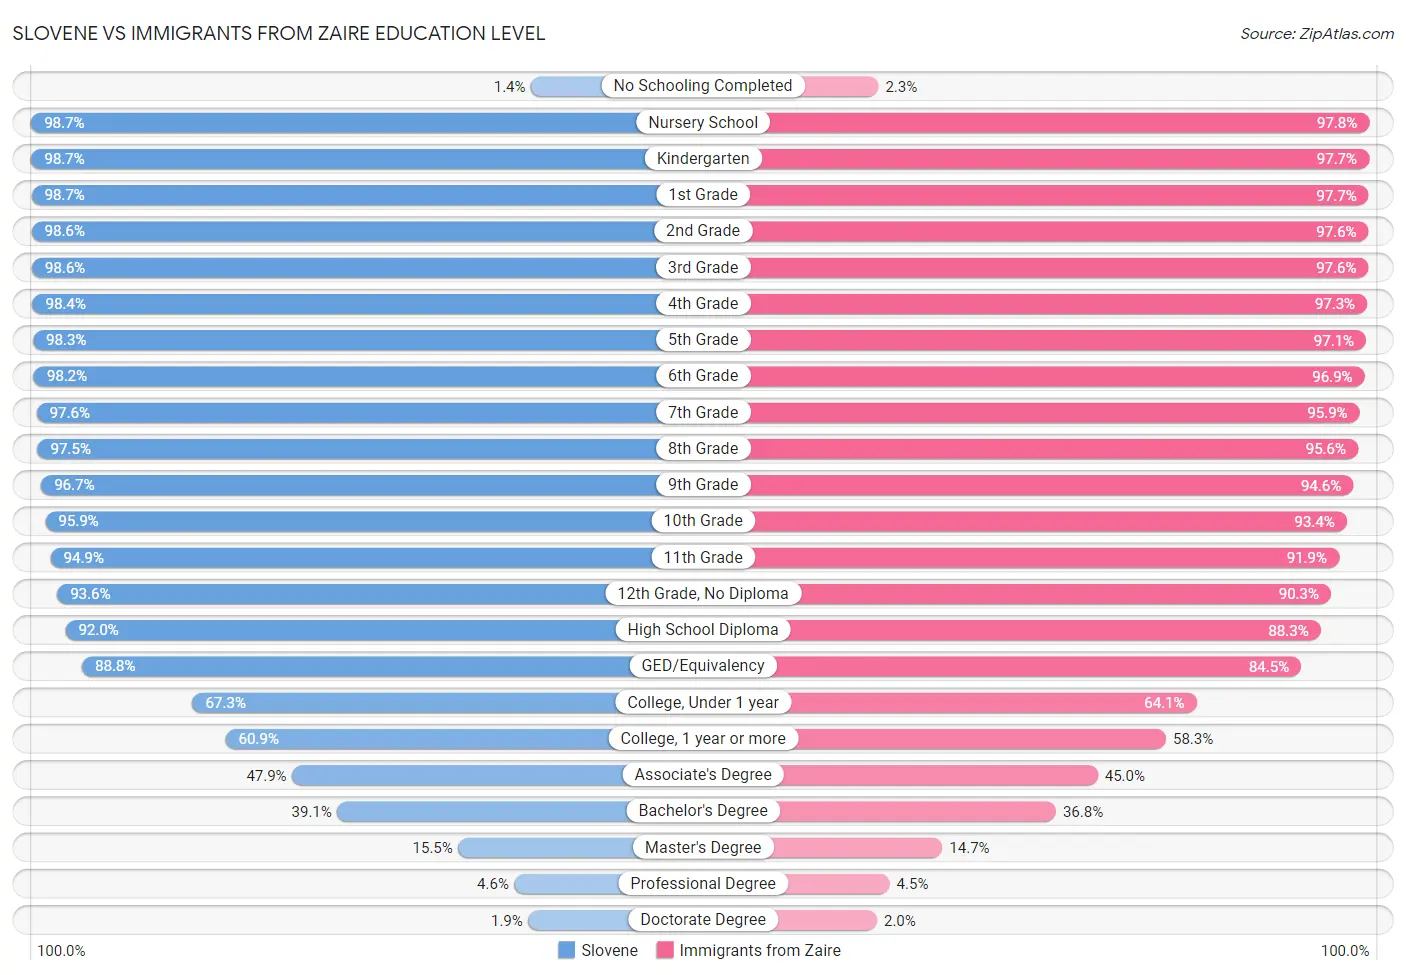 Slovene vs Immigrants from Zaire Education Level